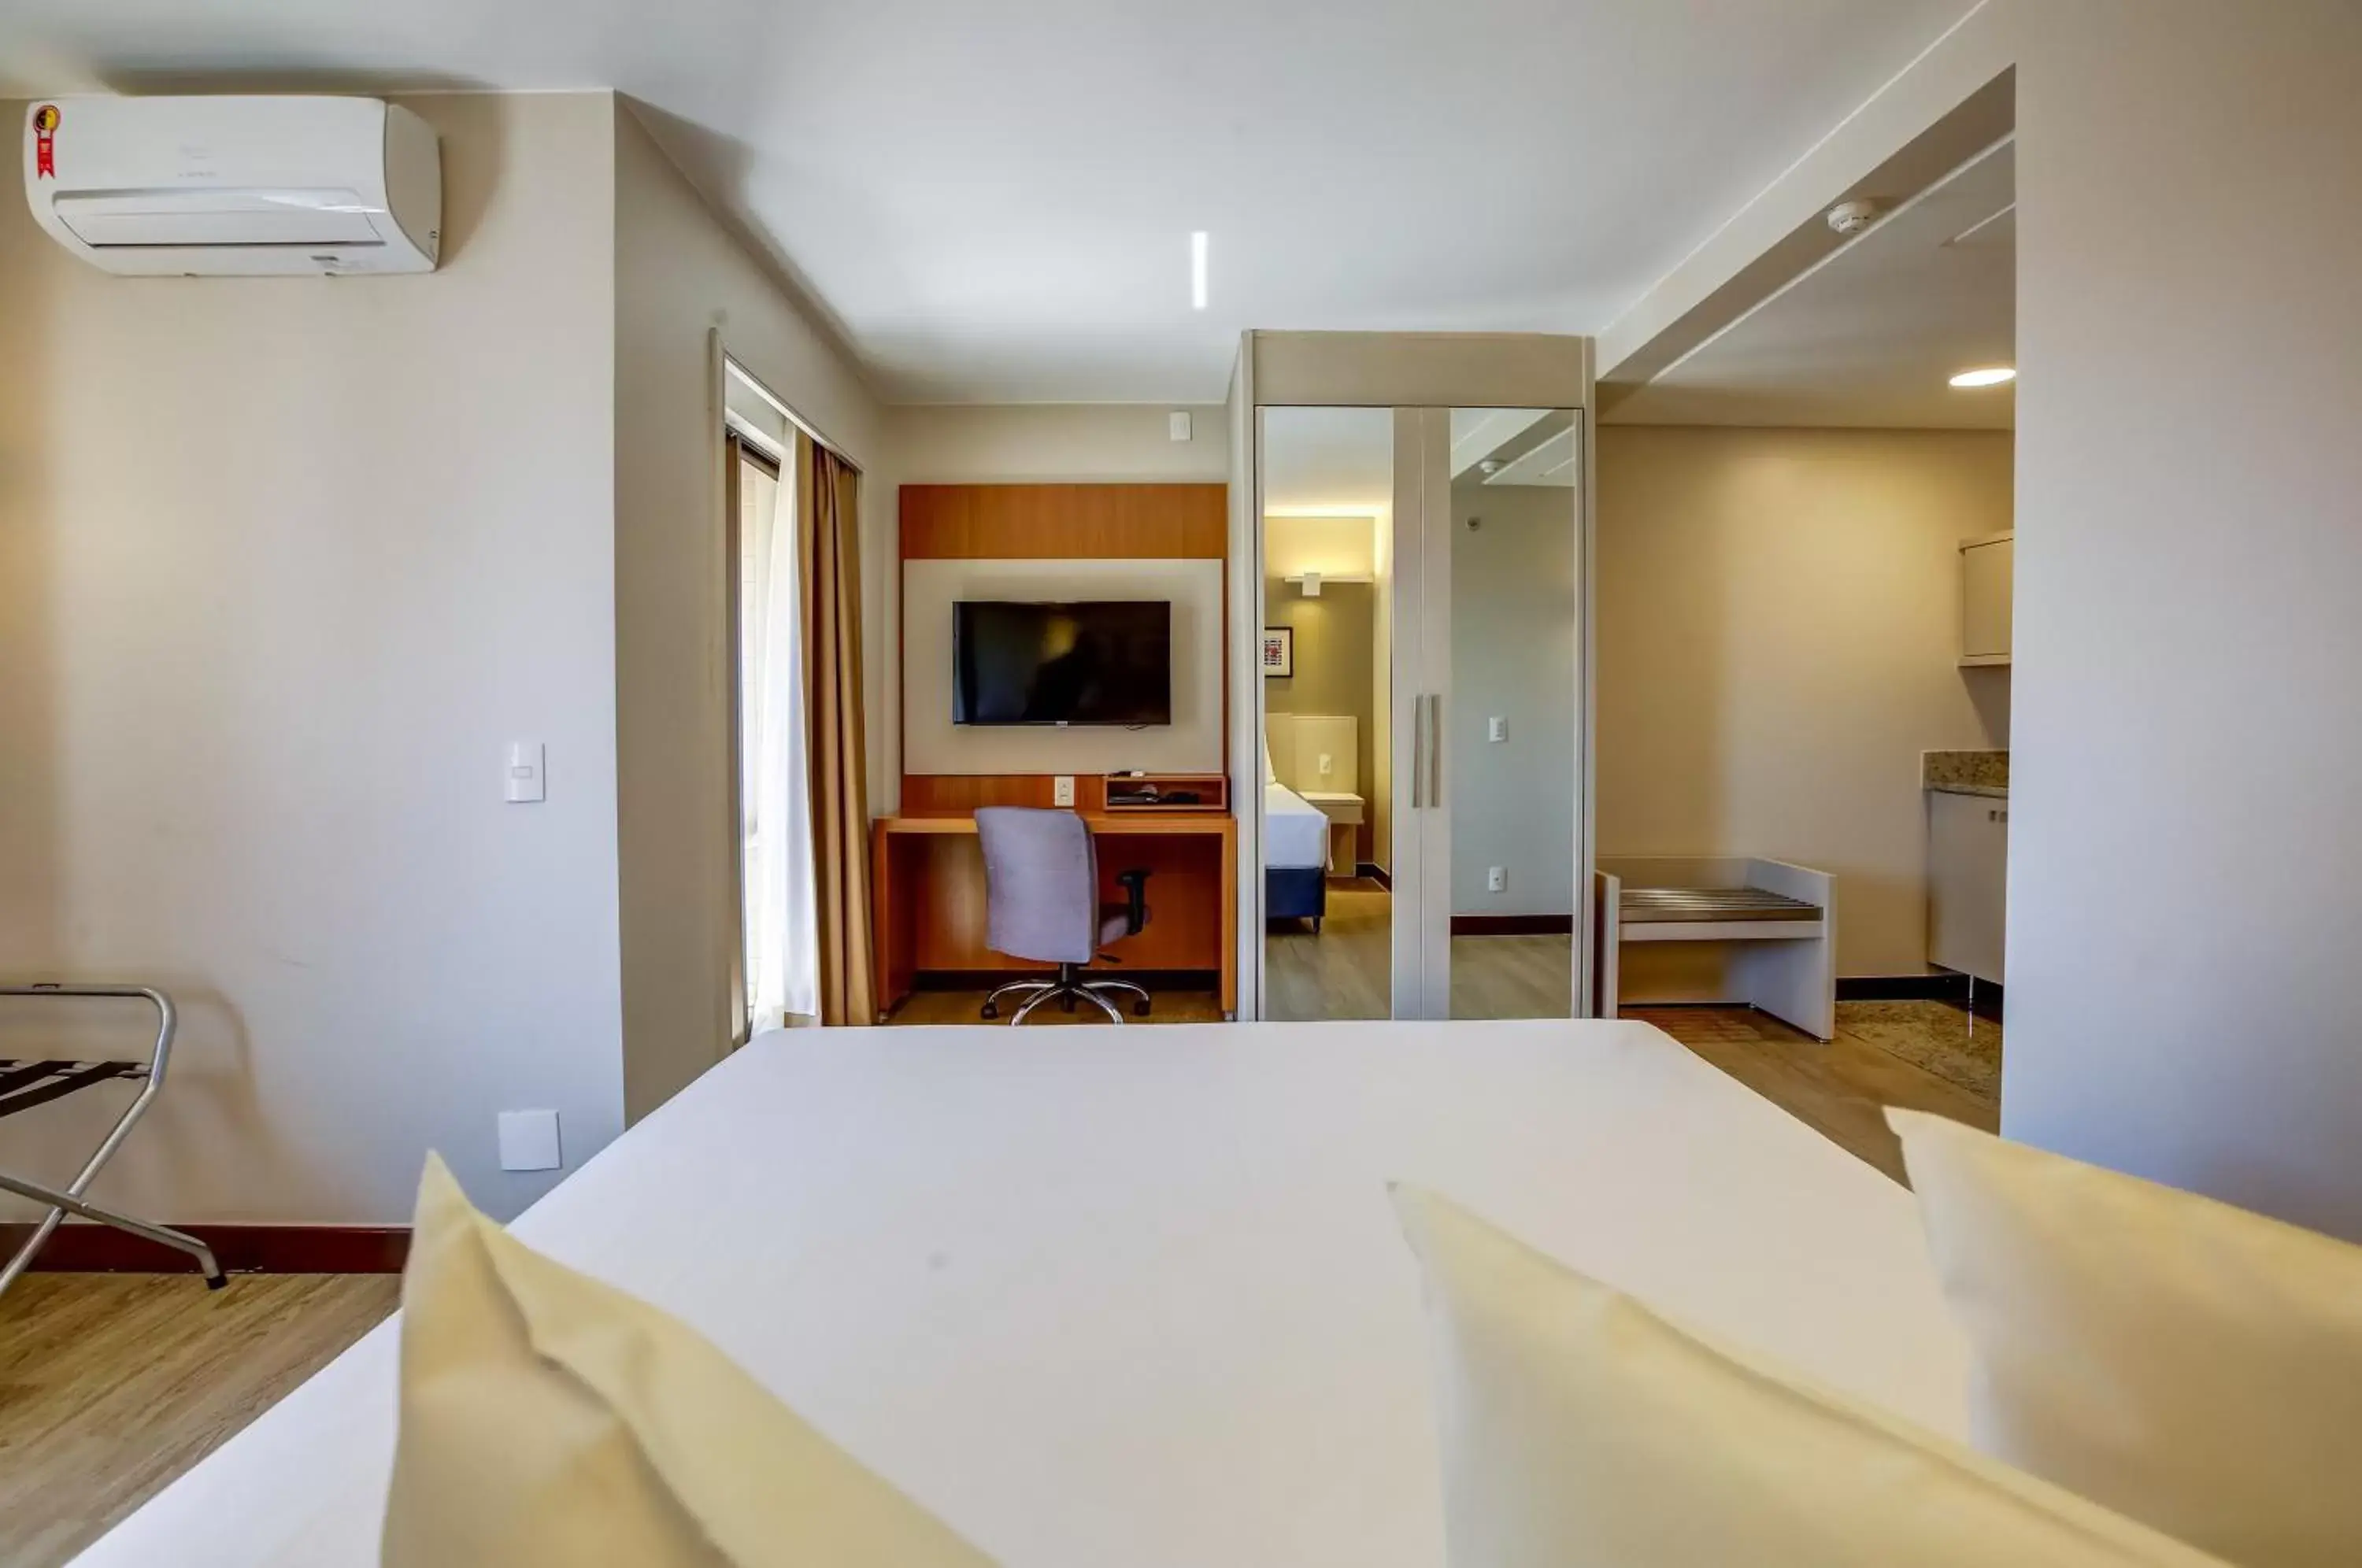 Area and facilities, Dining Area in Comfort Suites Brasília